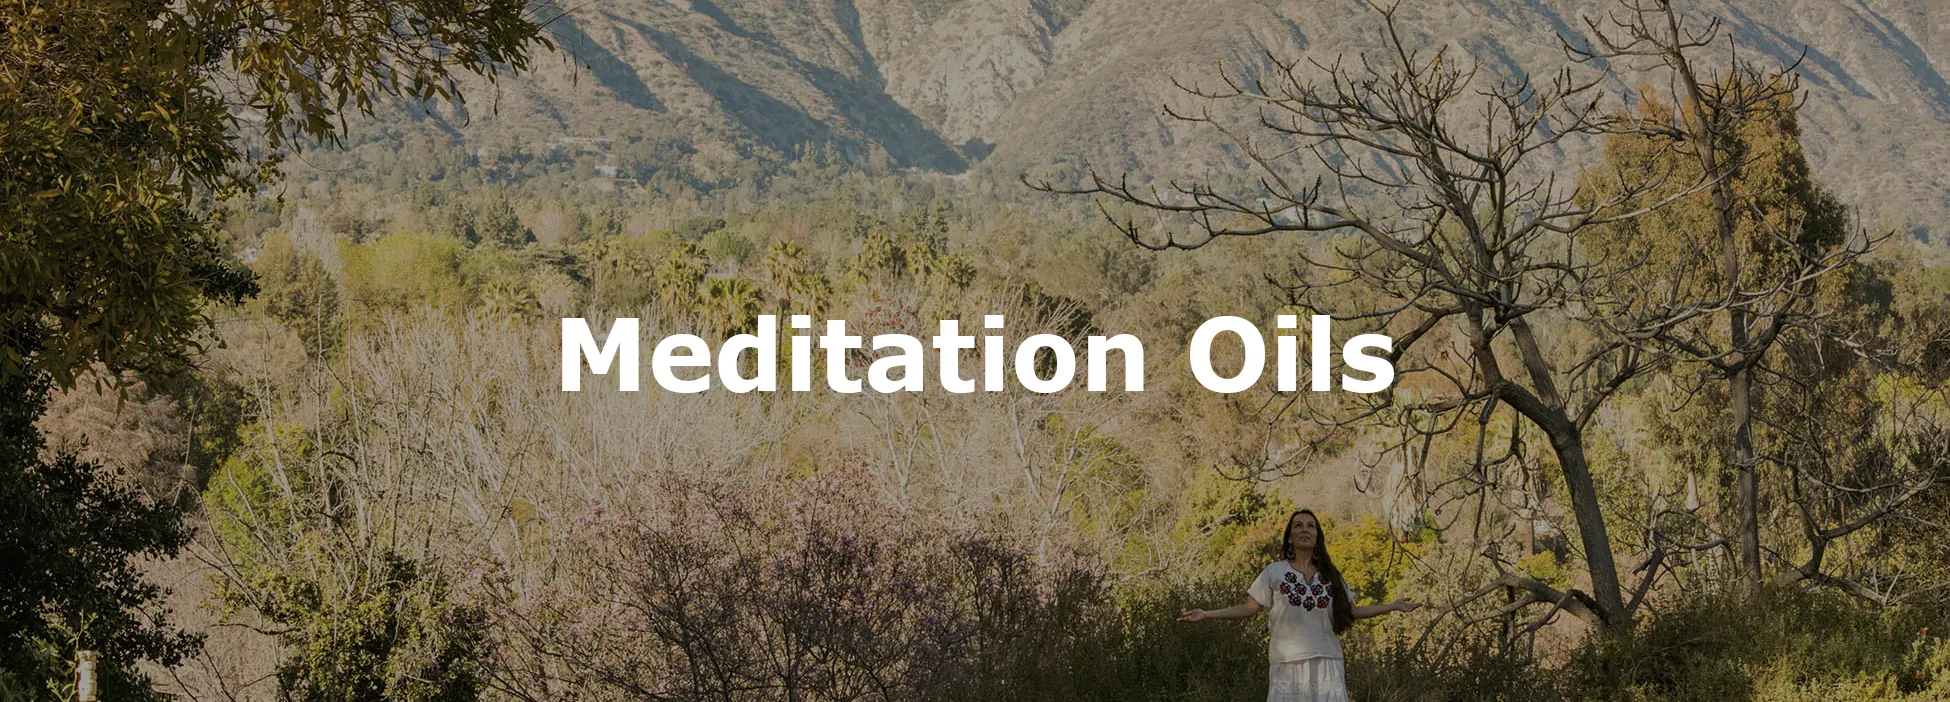 Meditation Oils Banner